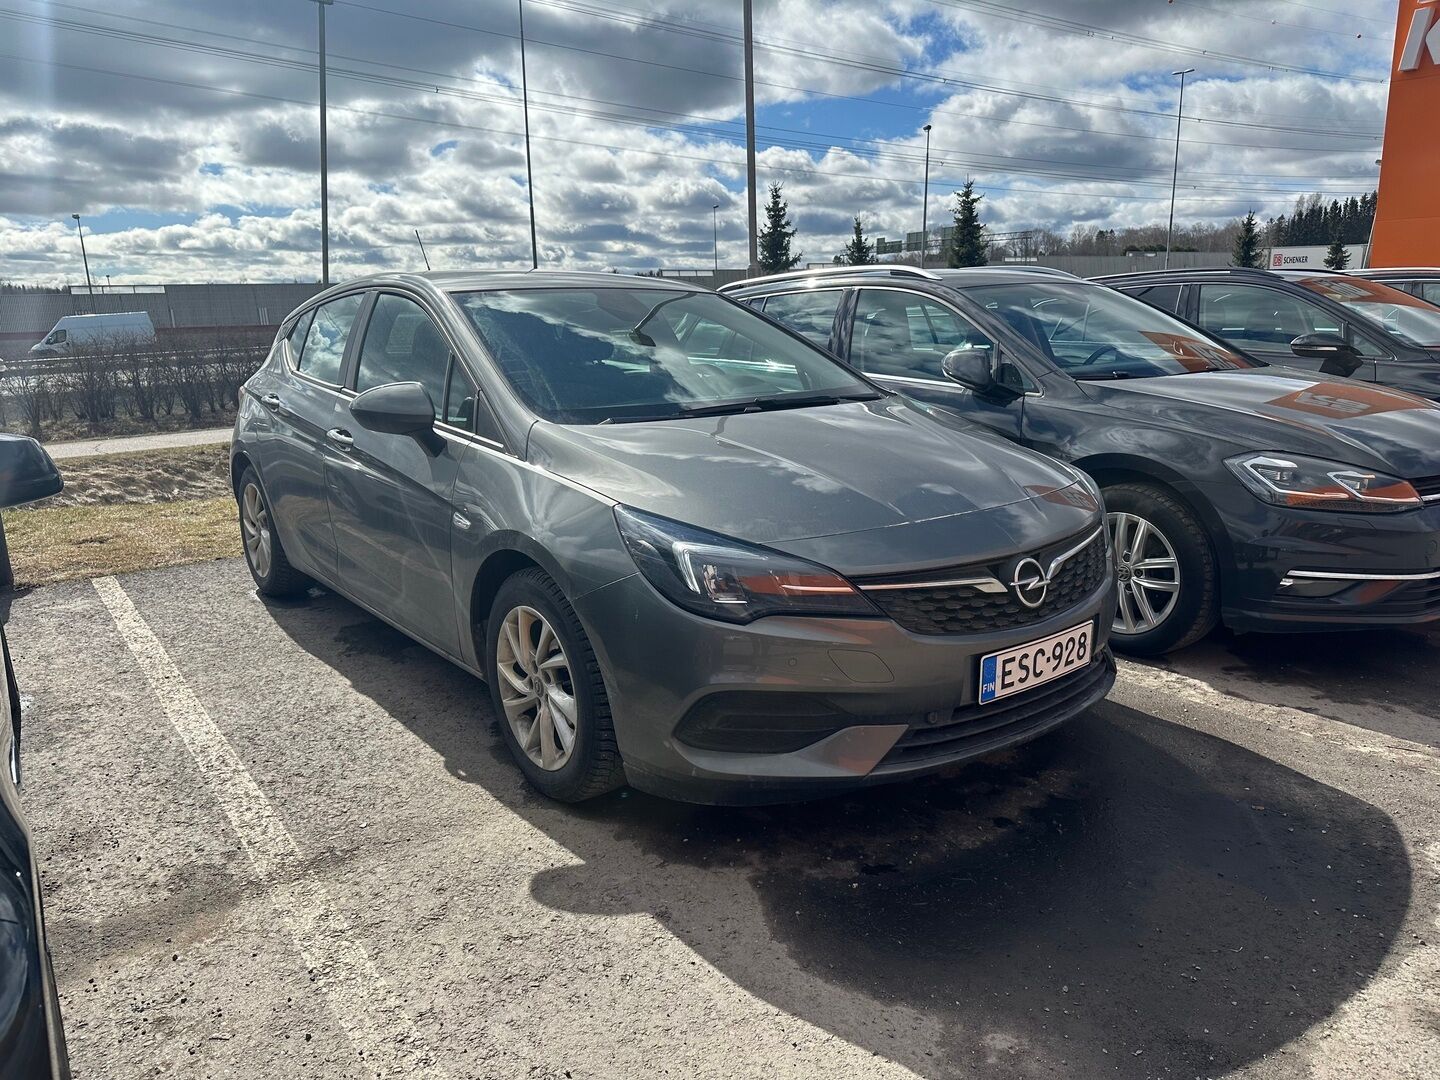 Harmaa Viistoperä, Opel Astra – ESC-928